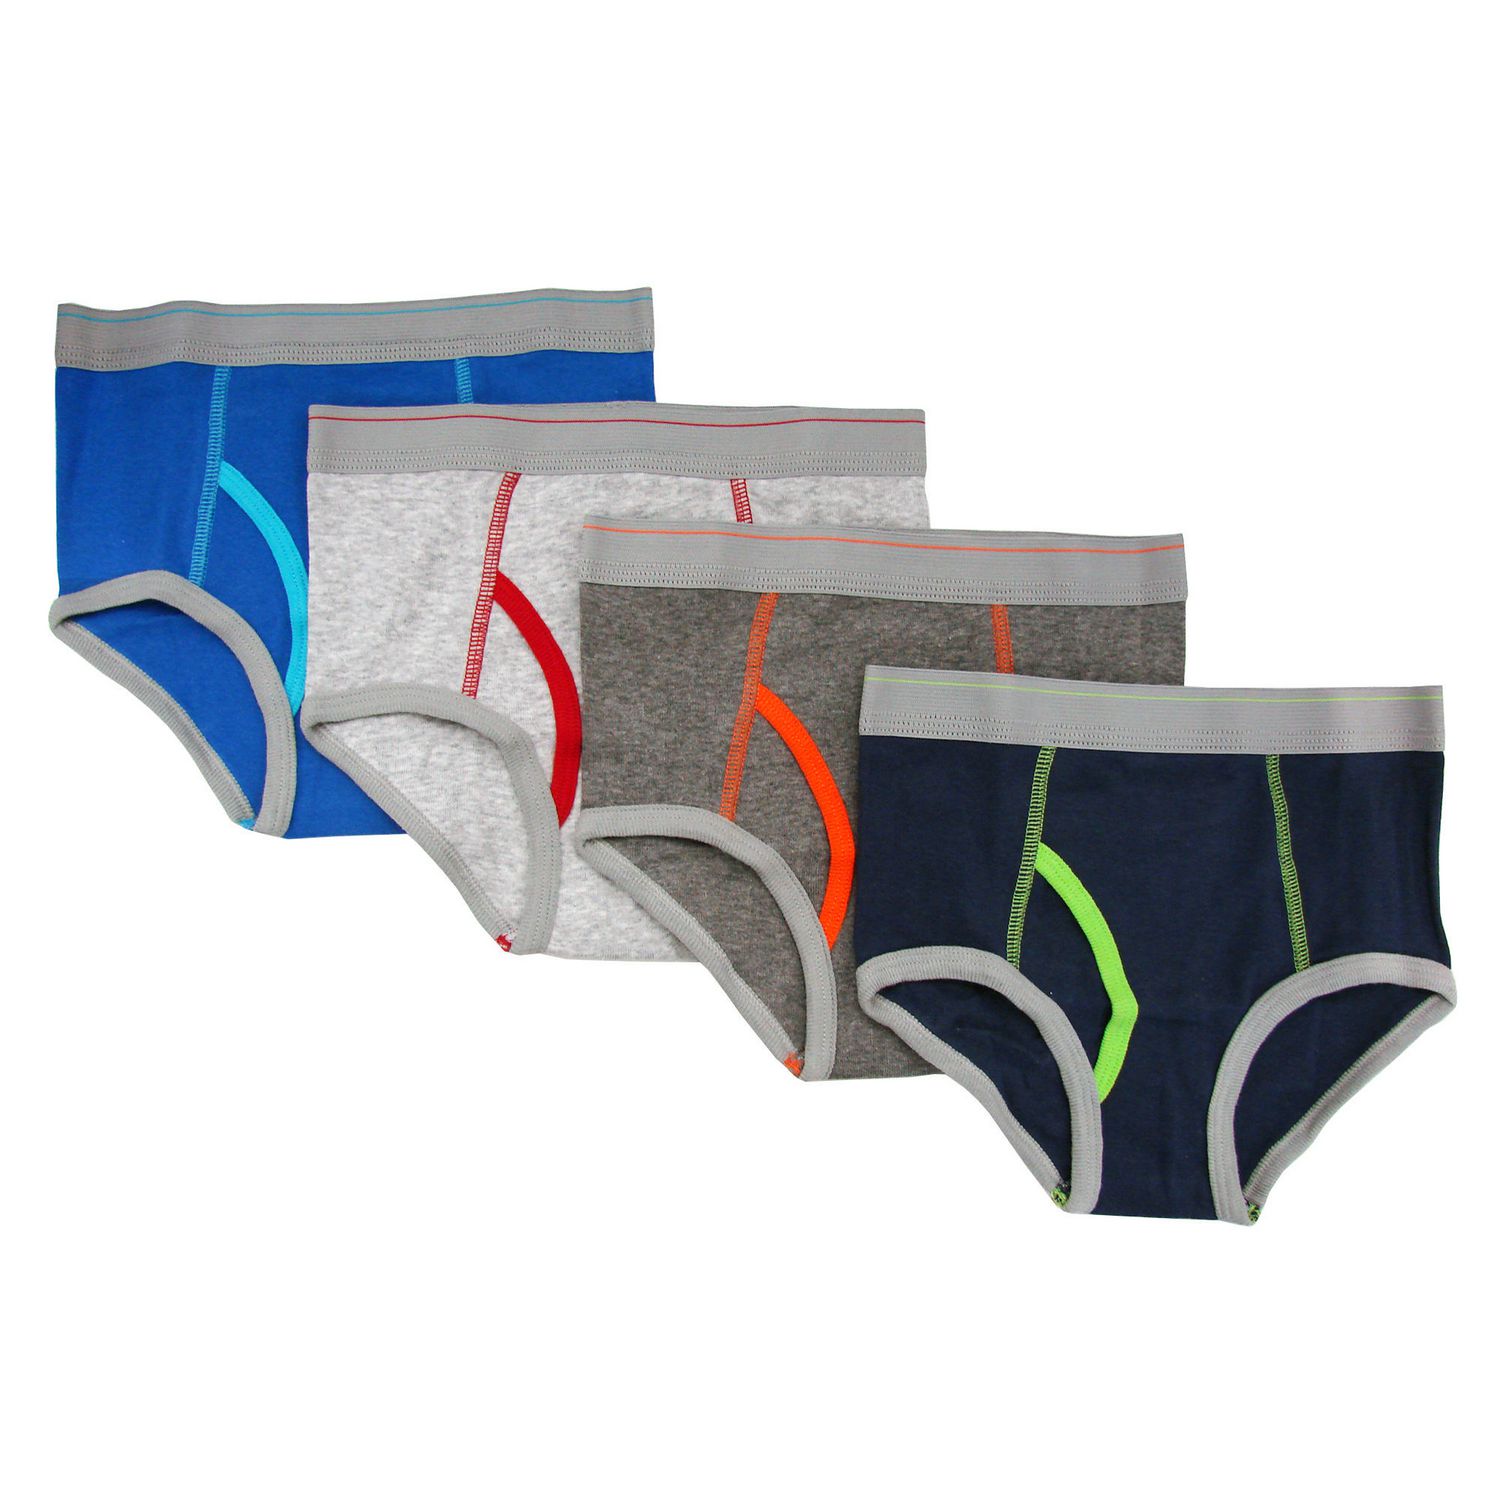 Gyratedream Little Boys (4-7) Basic Underwear in Boys Basic